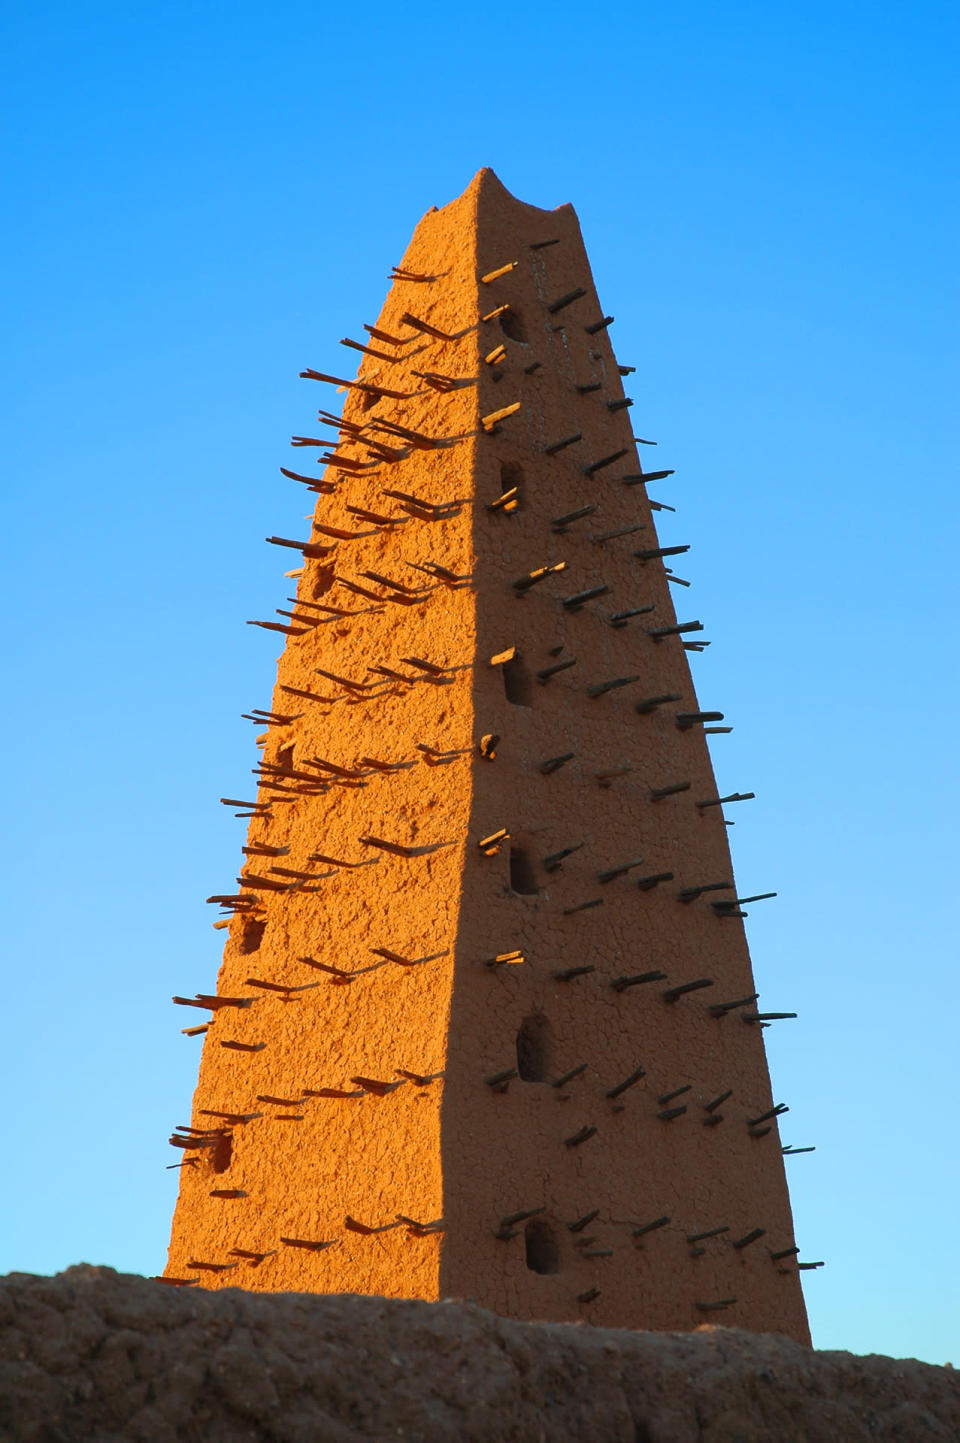 17. Agadez, Niger